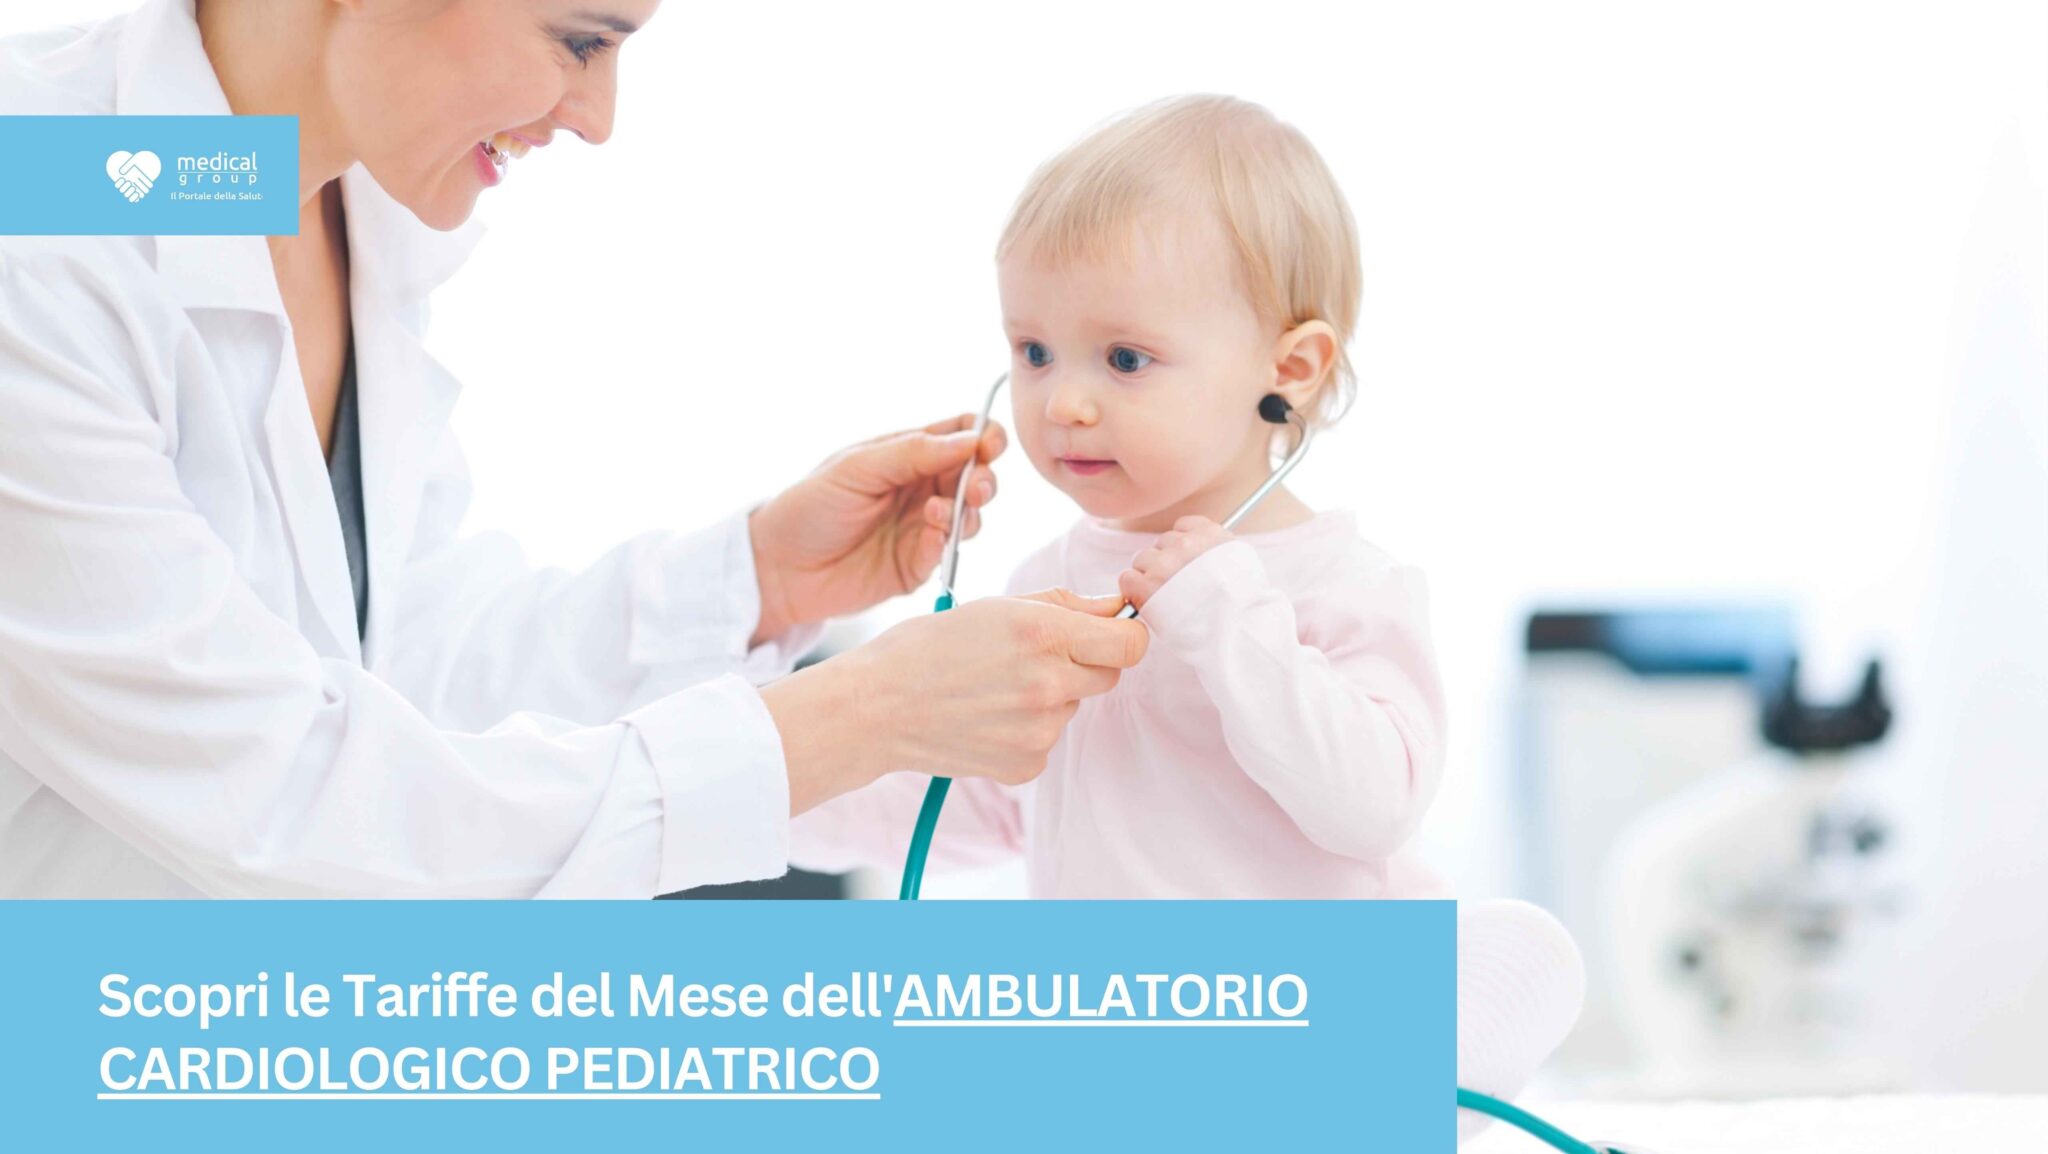 Tariffe-del-Mese-Poliambulatorio-Cardiologia-Pediatrica-F-Medical-Frosinone